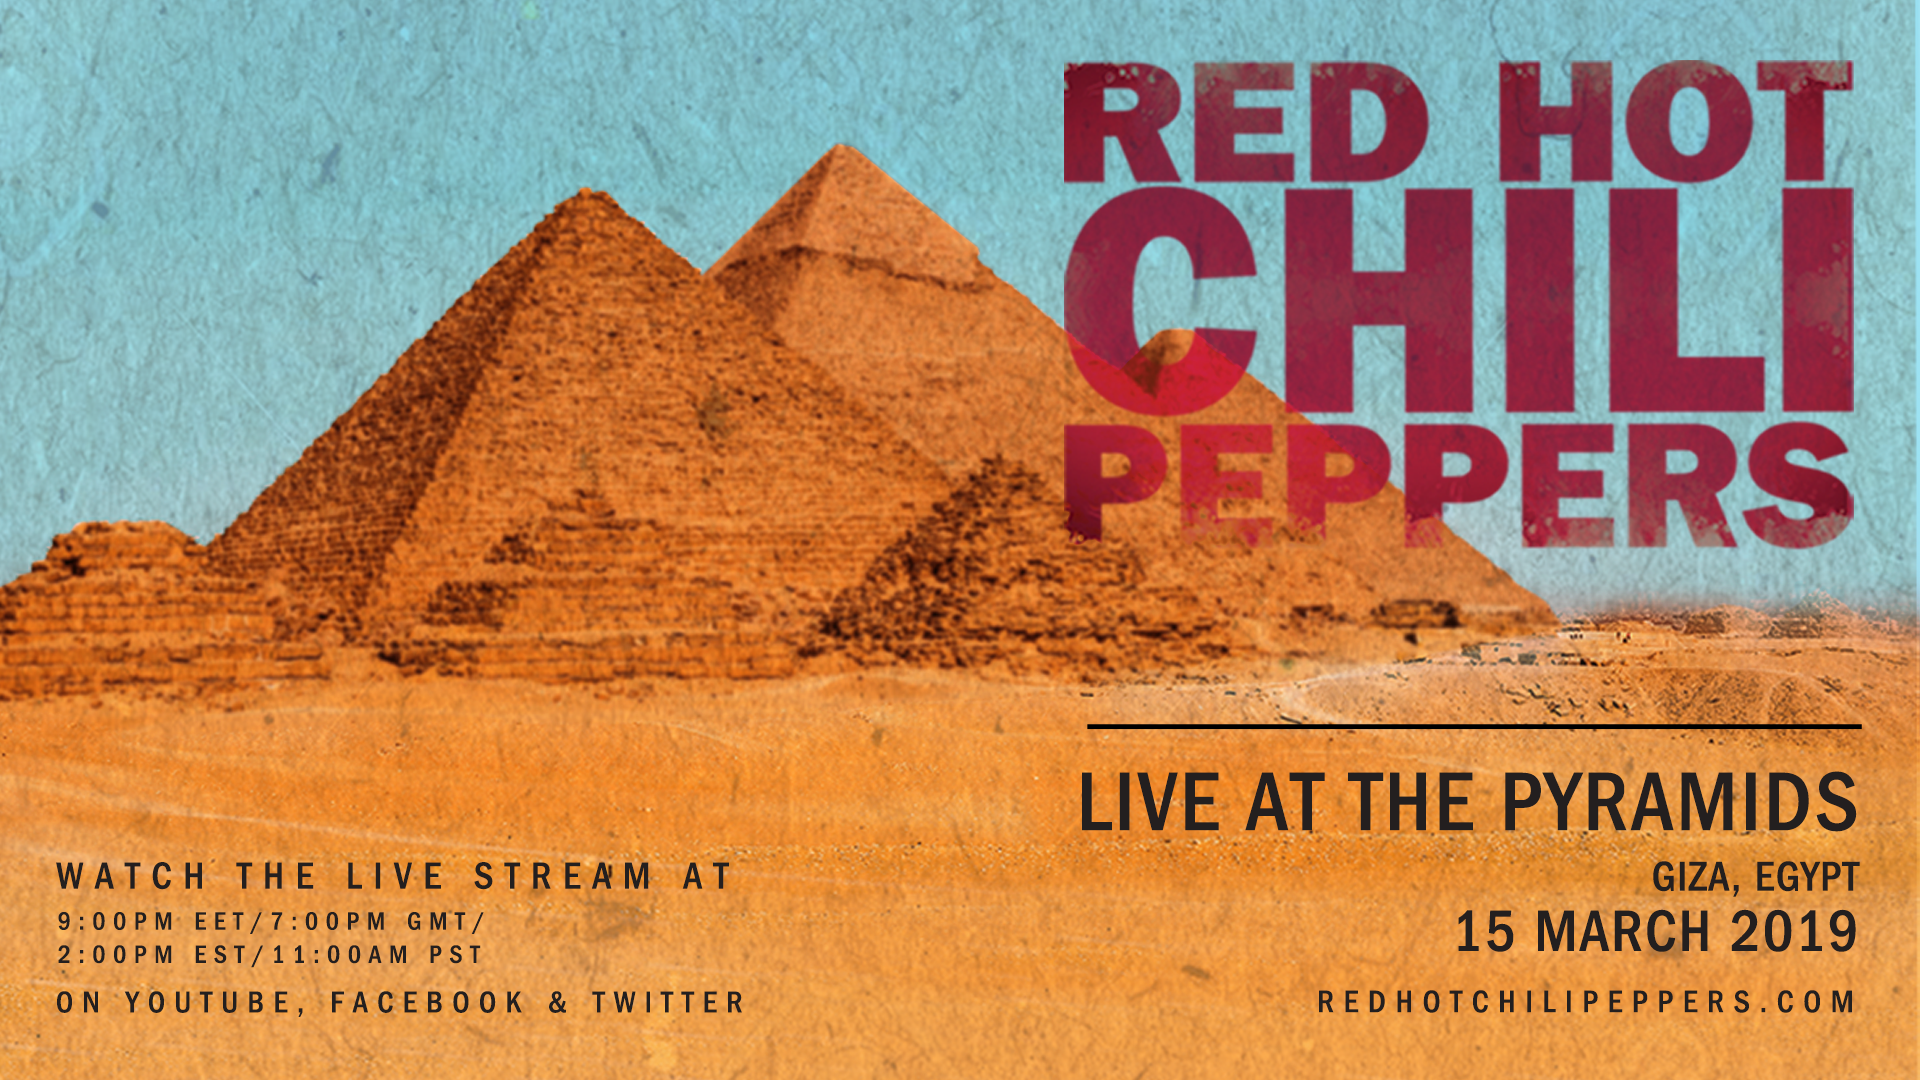 Show do Red Hot Chili Peppers nas Pirâmides do Egito será transmitido ao vivo